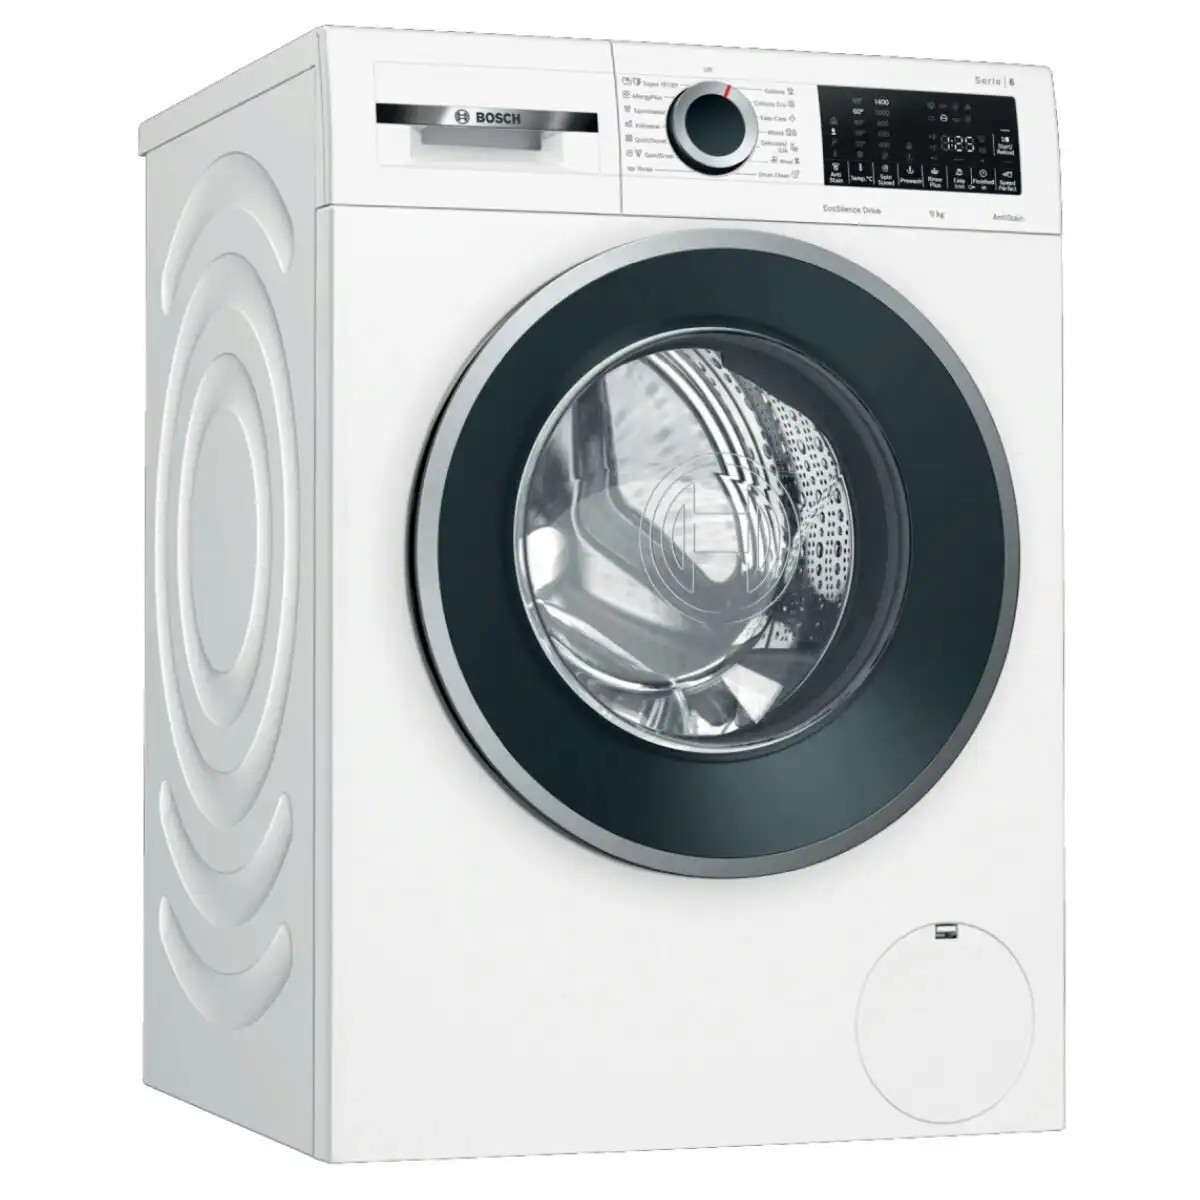 Bosch Series 6 9kg Front Load Washing Machine